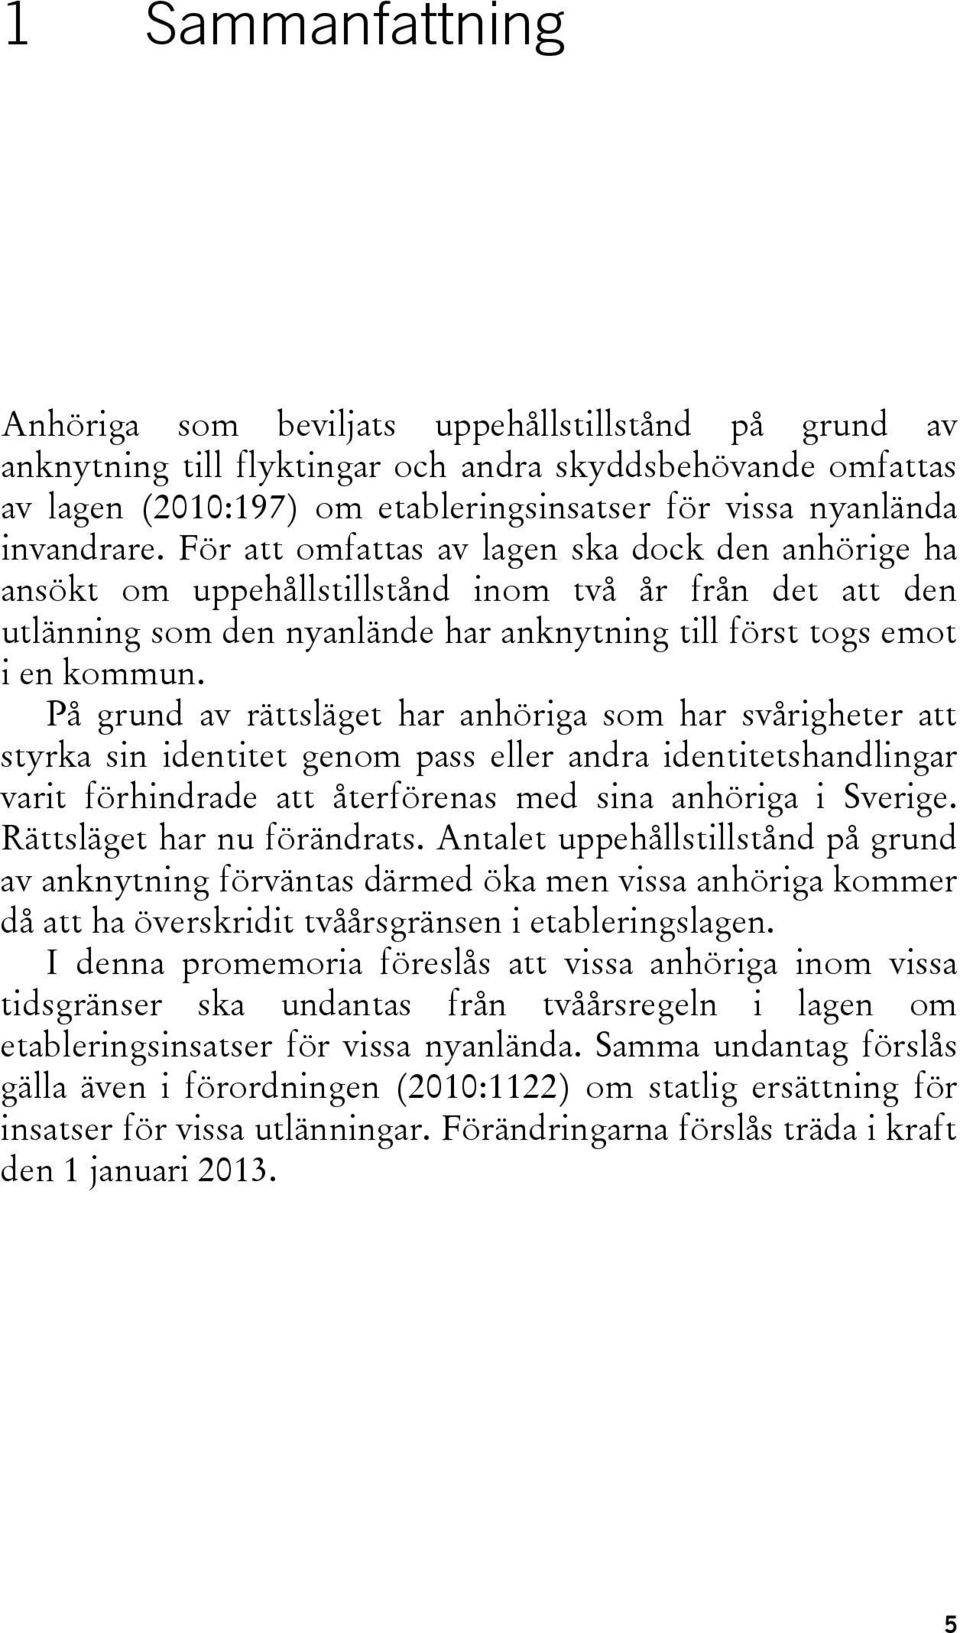 På grund av rättsläget har anhöriga som har svårigheter att styrka sin identitet genom pass eller andra identitetshandlingar varit förhindrade att återförenas med sina anhöriga i Sverige.